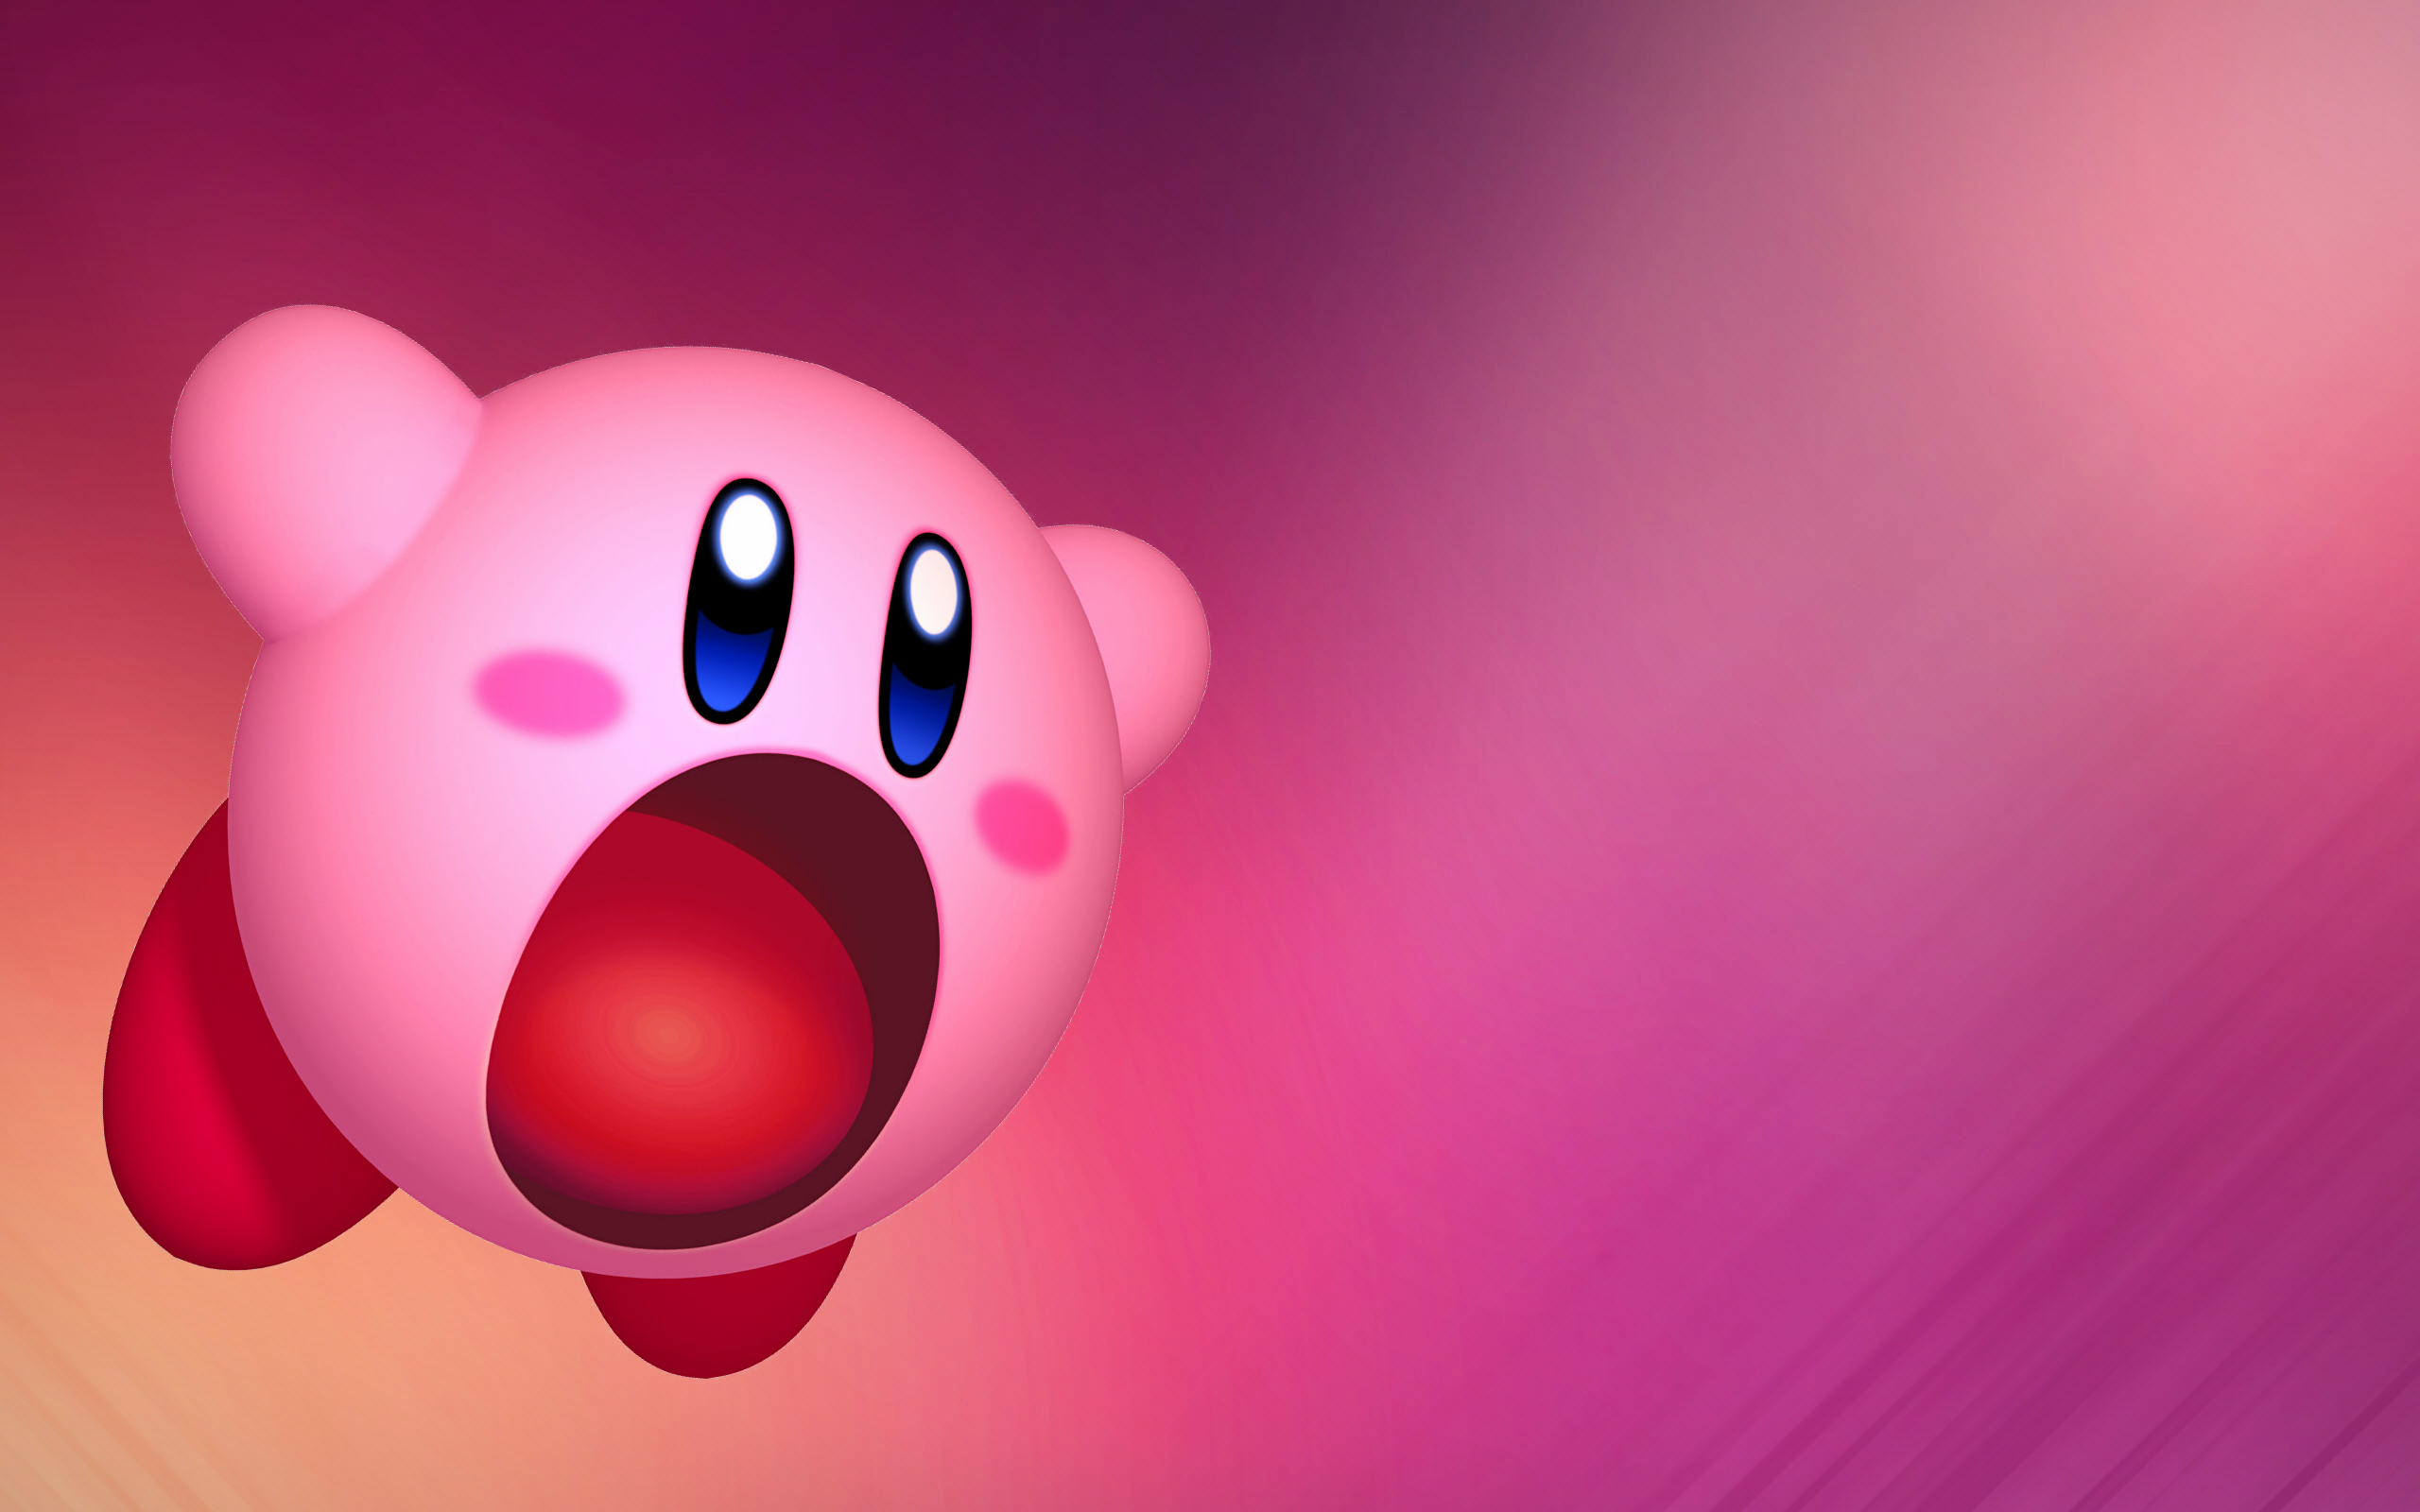 Cute Kirby Flowers Desktop Wallpaper - Cool Kirby Wallpapers 4K